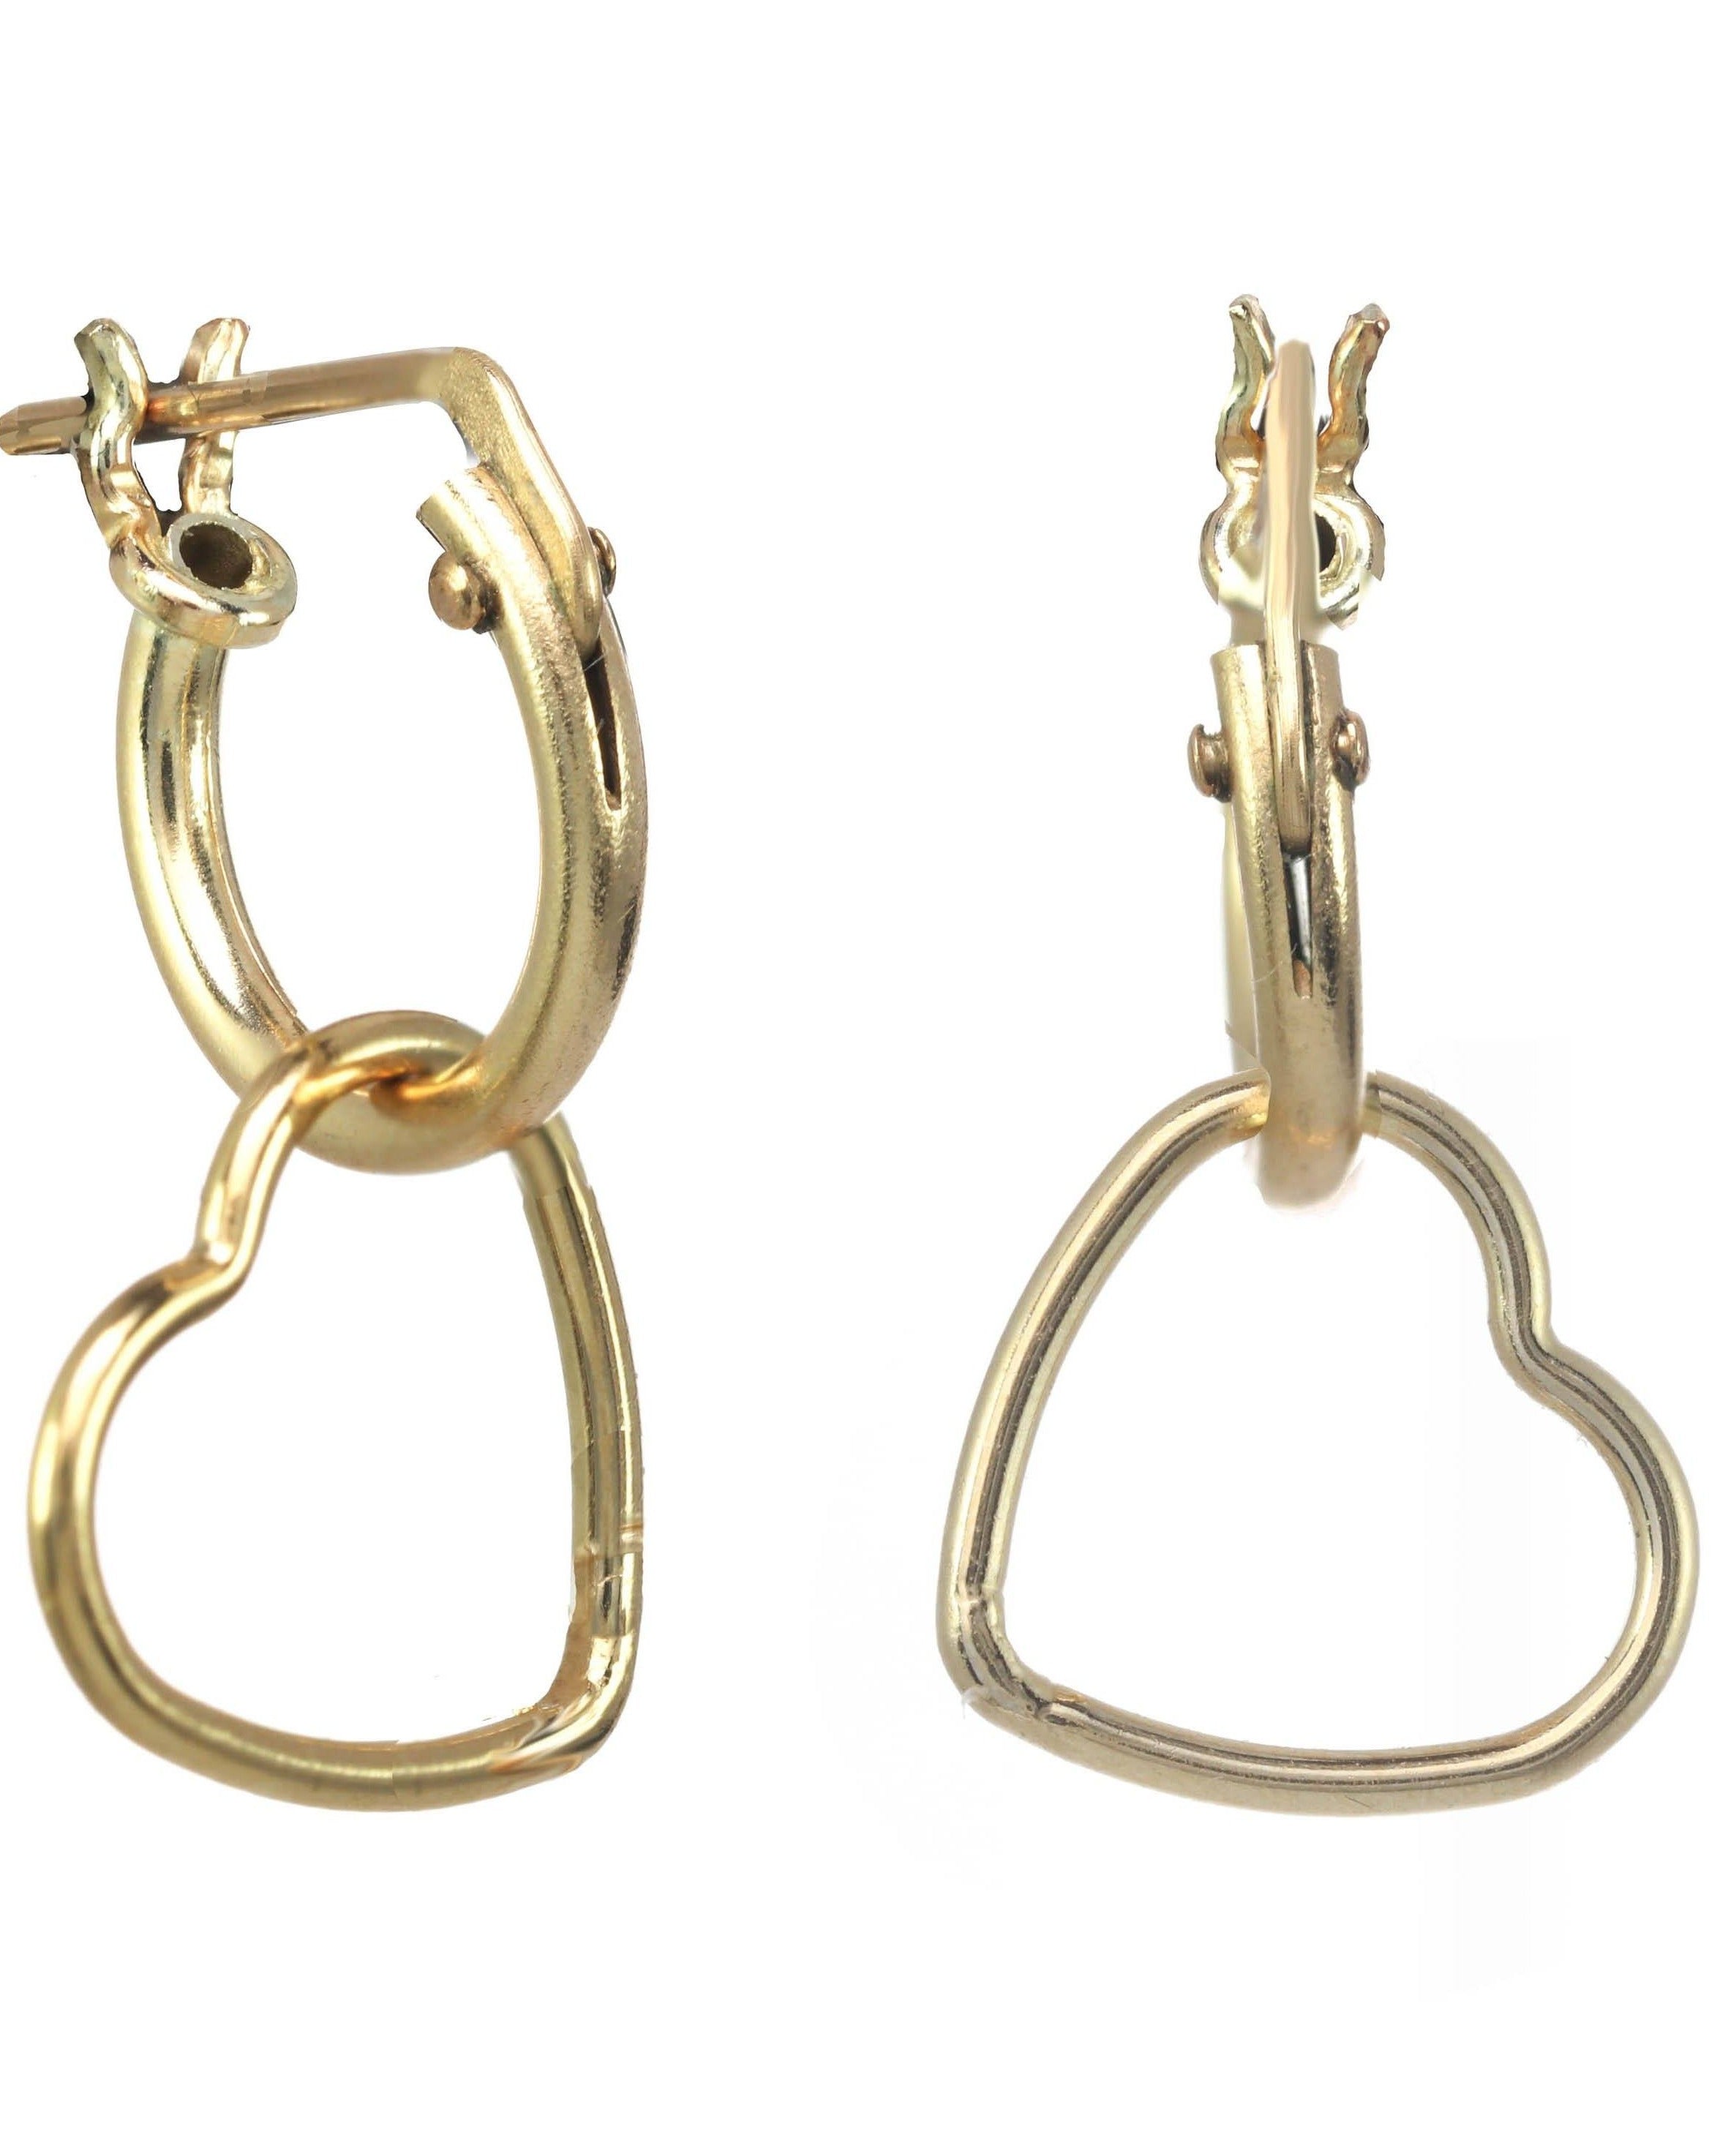 Hera Hoops Earrings by KOZAKH. 10mm snap hoop earrings in 14K Gold Filled, featuring a 13mm heart shaped charm.